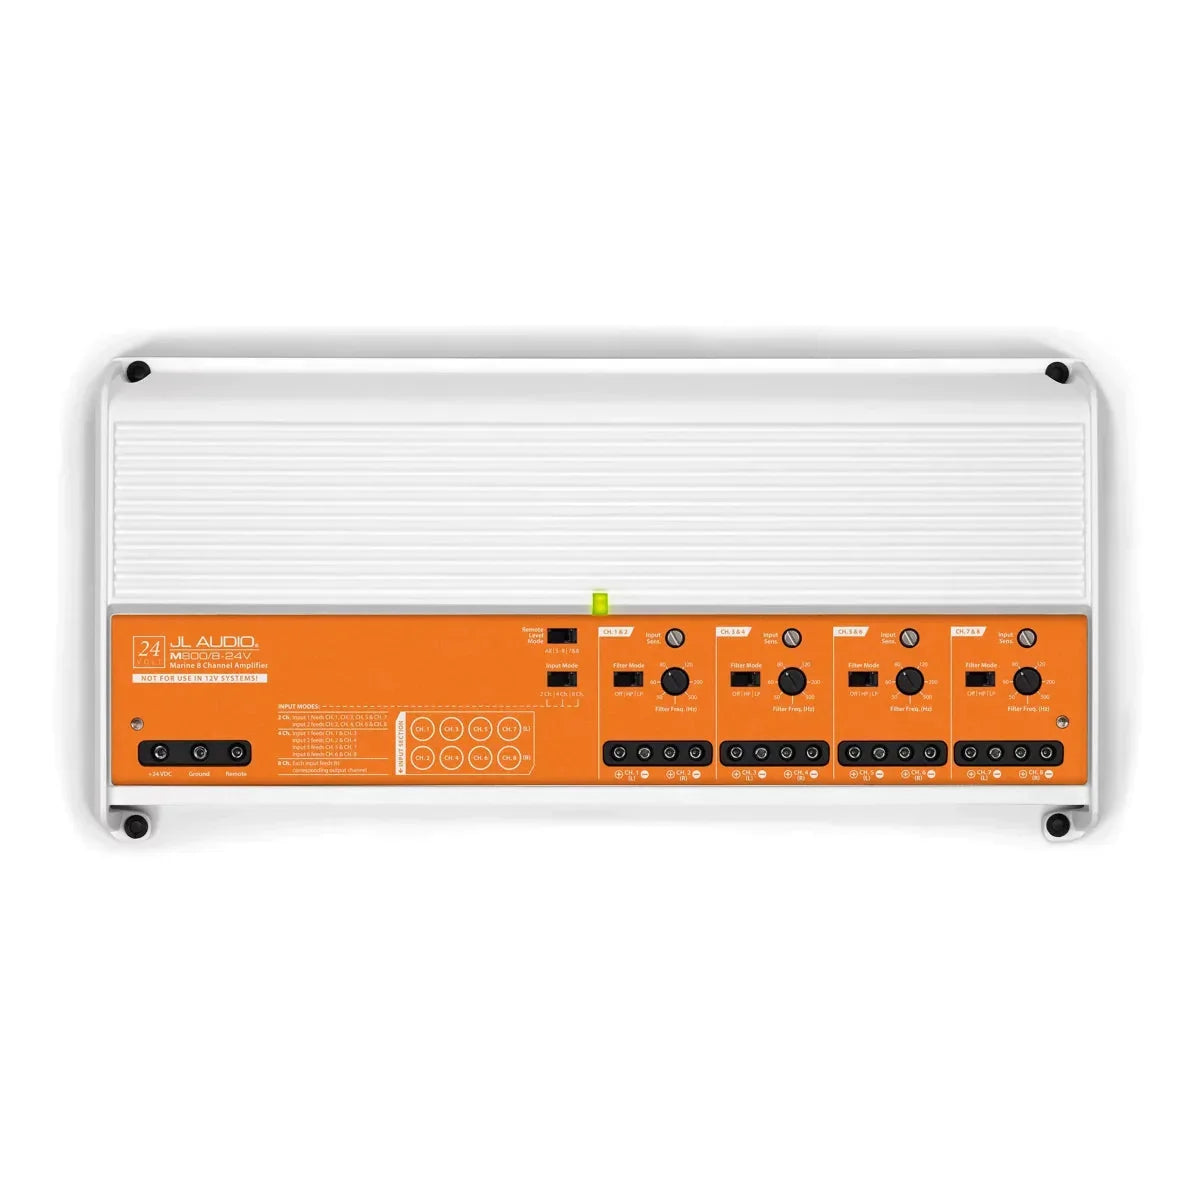 JL Audio-M800/8-24V-8-Kanal Verstärker-Masori.de